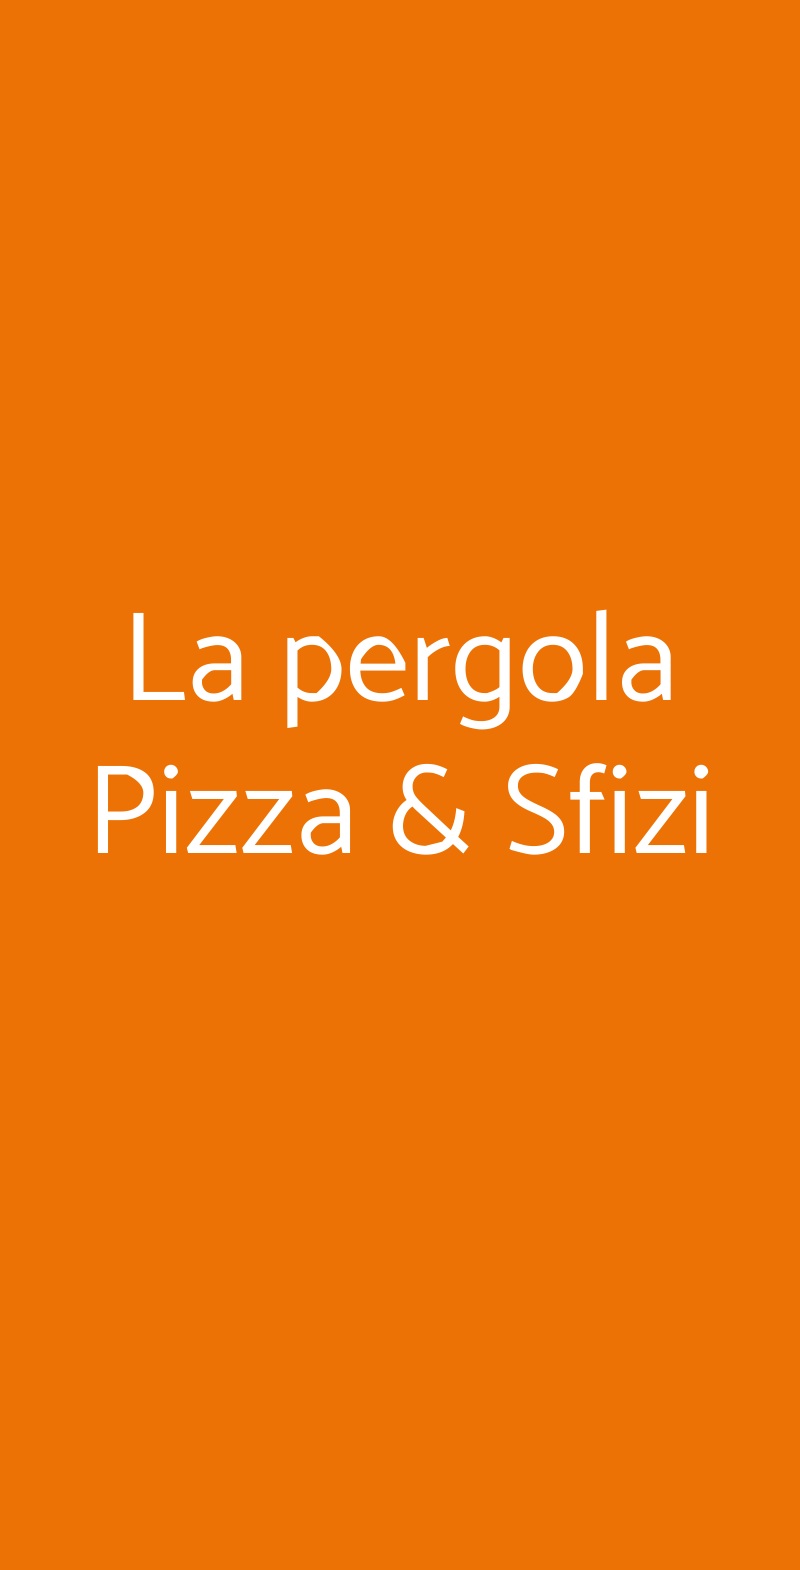 La pergola Pizza & Sfizi Roma menù 1 pagina